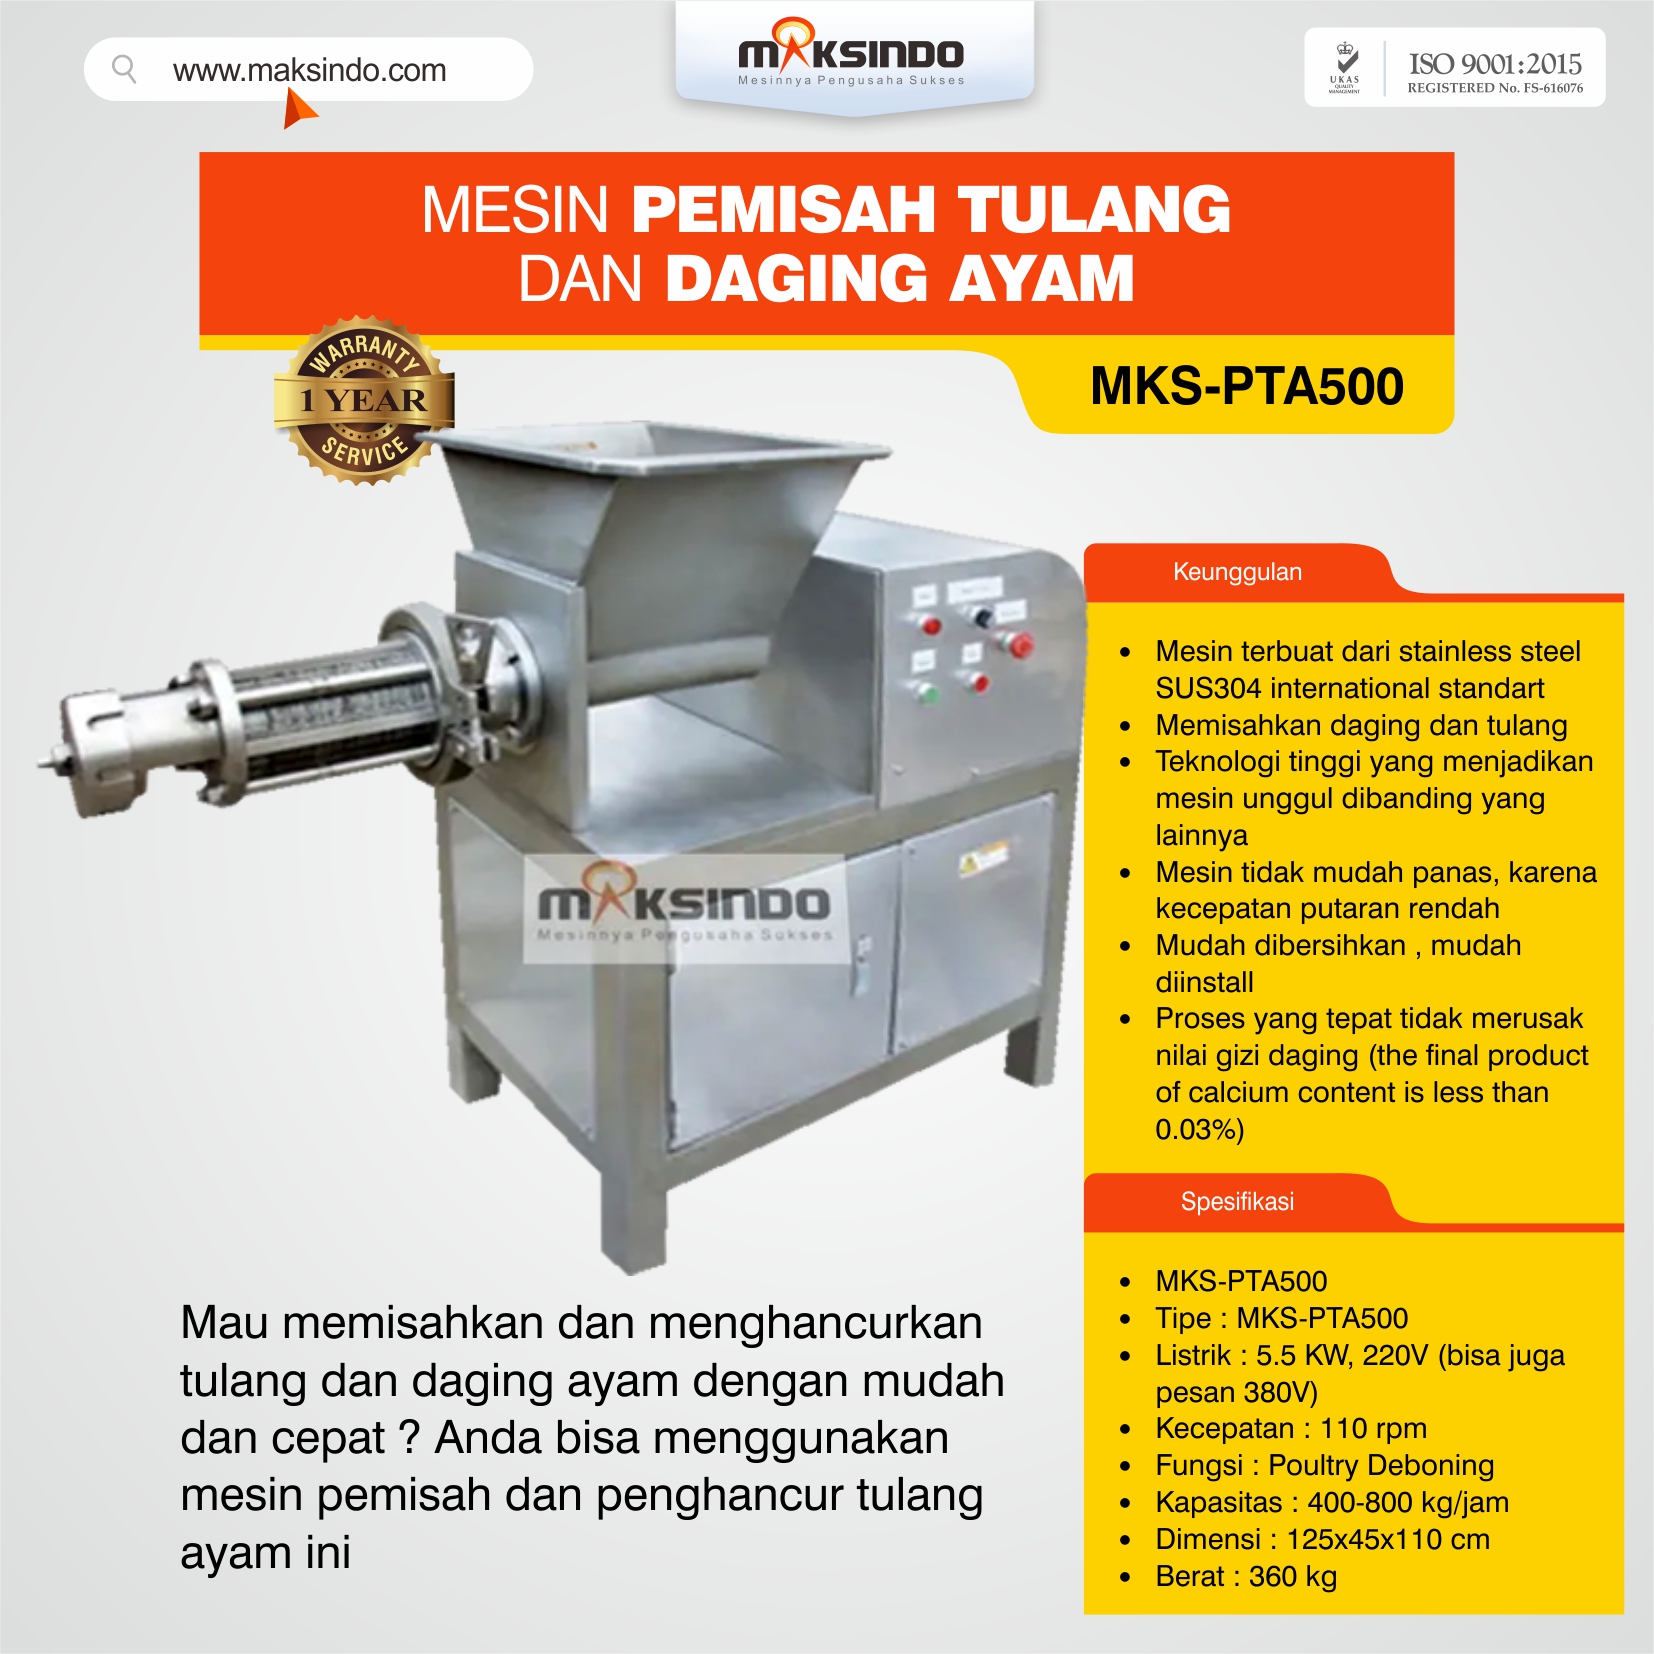 Jual Pemisah Tulang dan Daging Ayam PTA500 di Semarang